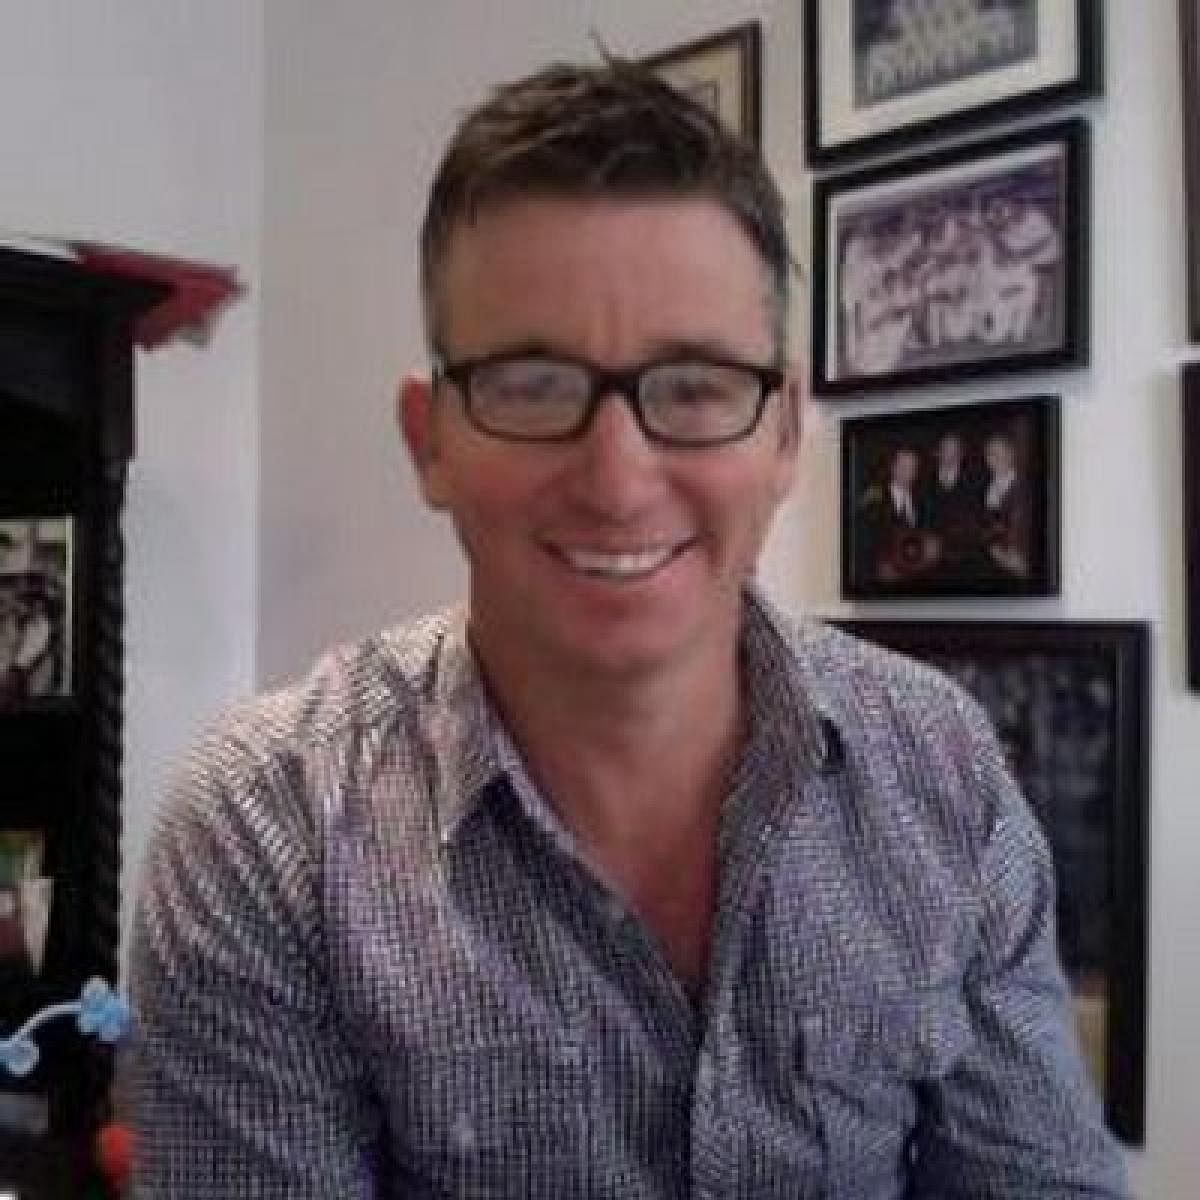 Former Australia spinner Robertson battles brain cancer